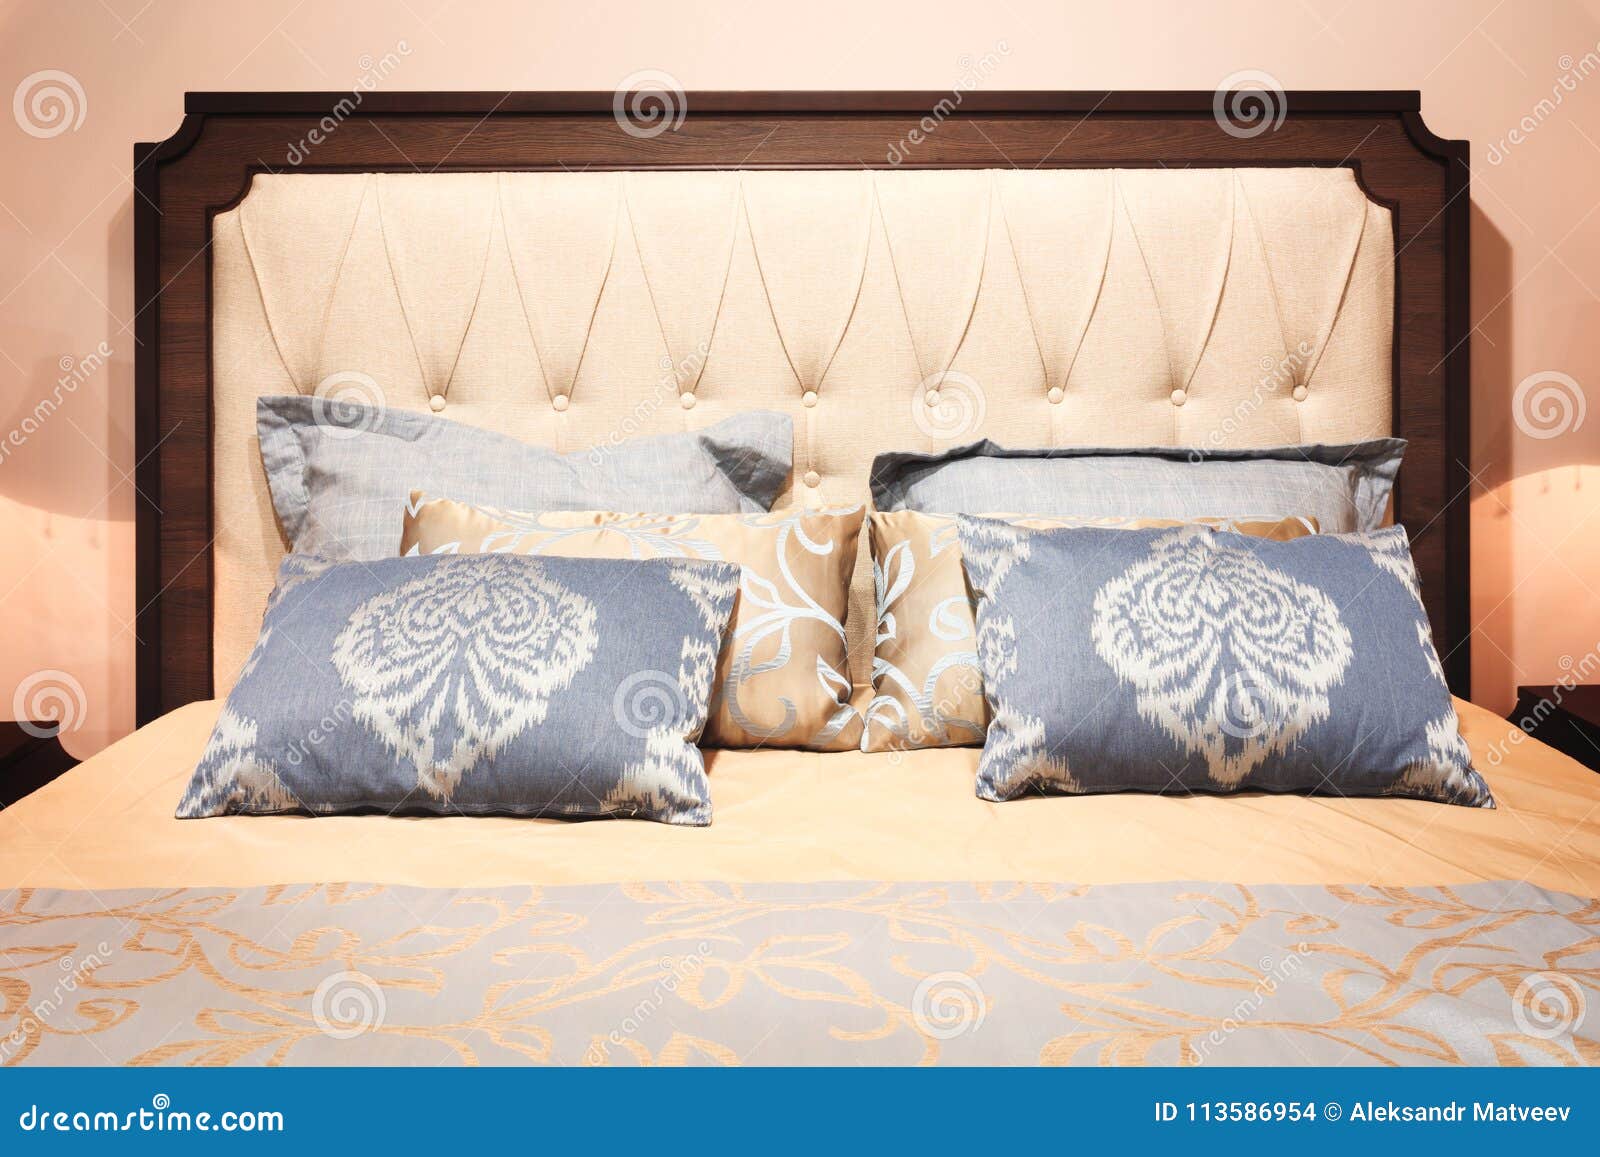 Dormitorios Grises Y Azules – Gaitzerditeatro.com